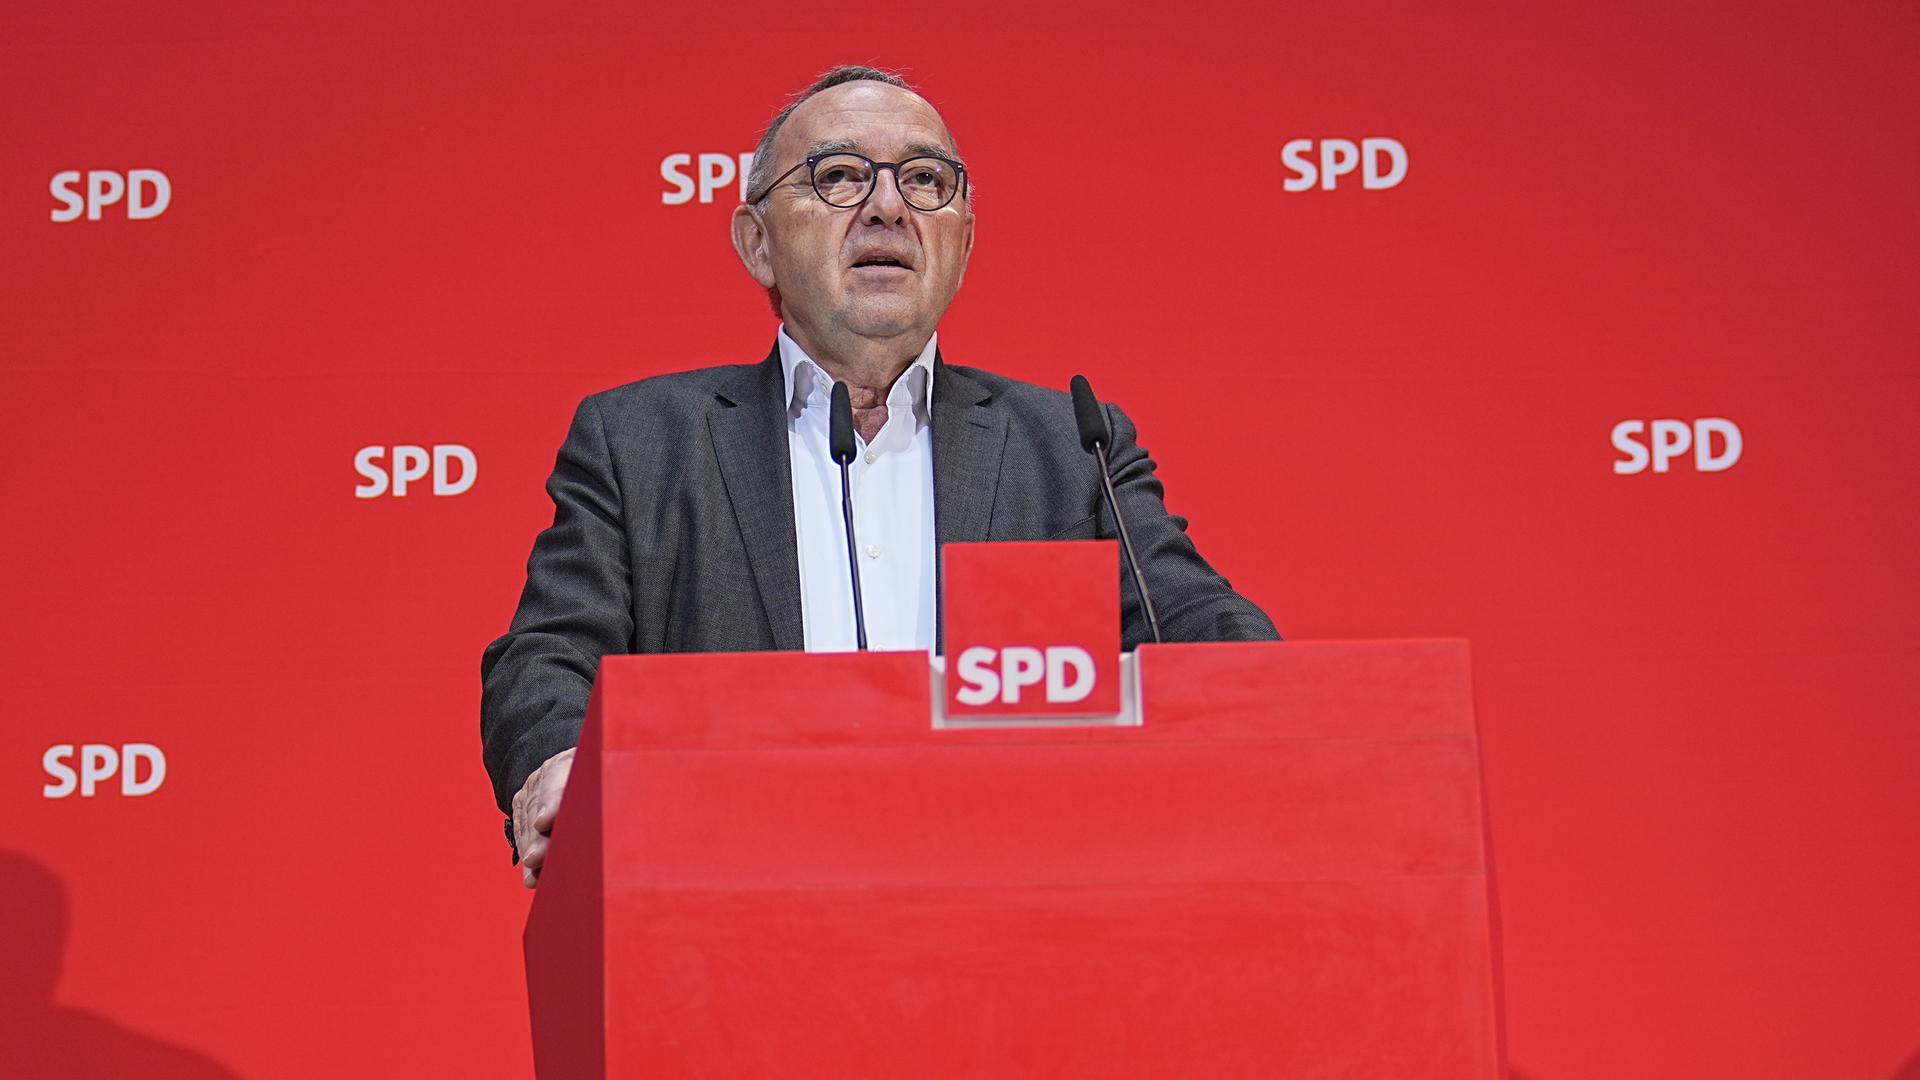 Der SPD-Co-Bundesvorsitzende Norbert Walter-Borjans vor einer roten Wand mit dem Logo der SPD